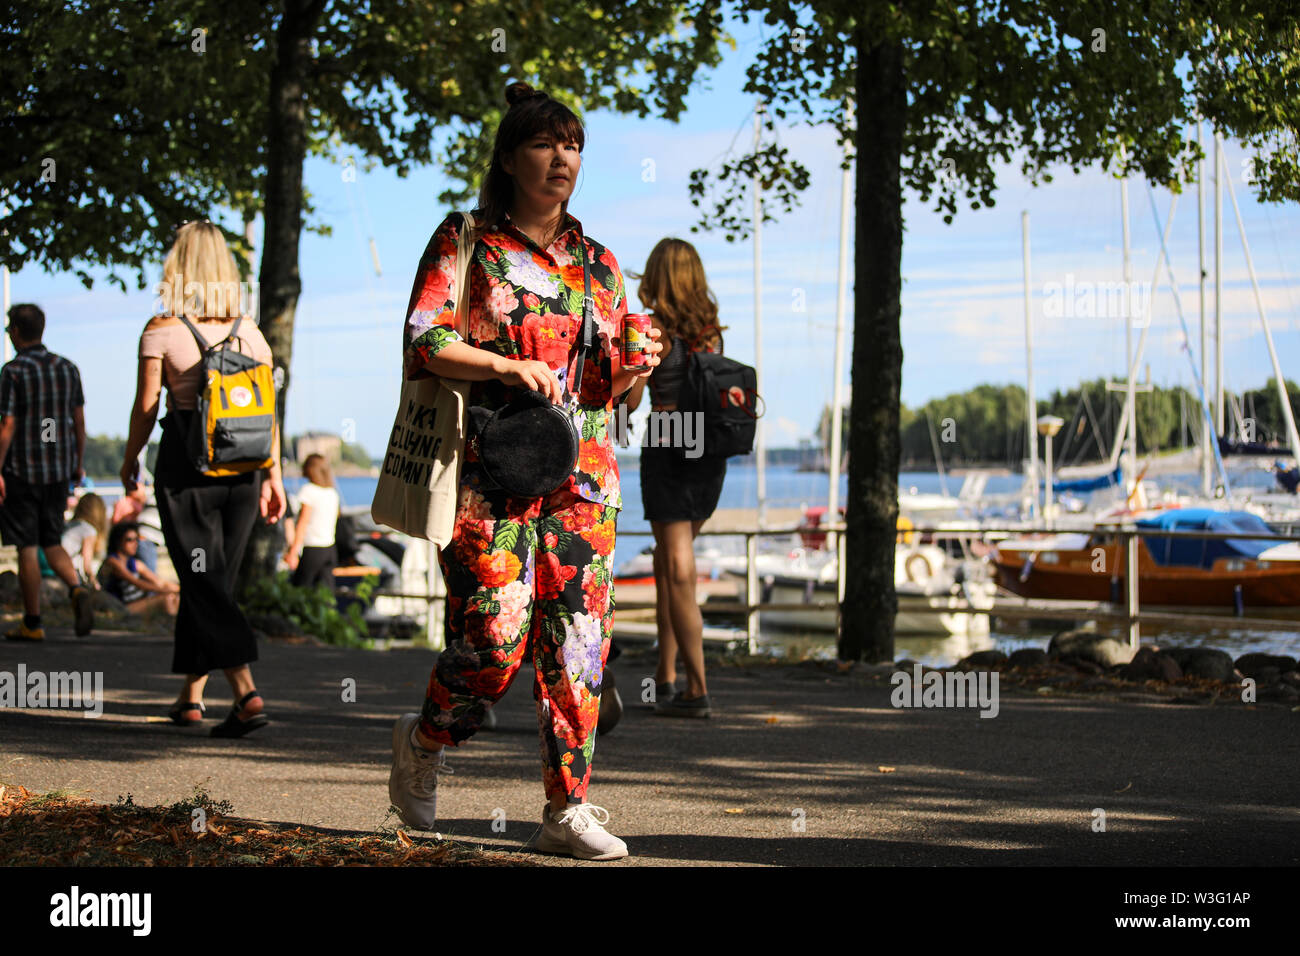 Junge Frau im Sommer Tücher mit einem passenden kann der sider Merihaka am Meer entlang spazieren während Kallio Block Party 2018 in Helsinki, Finnland Stockfoto